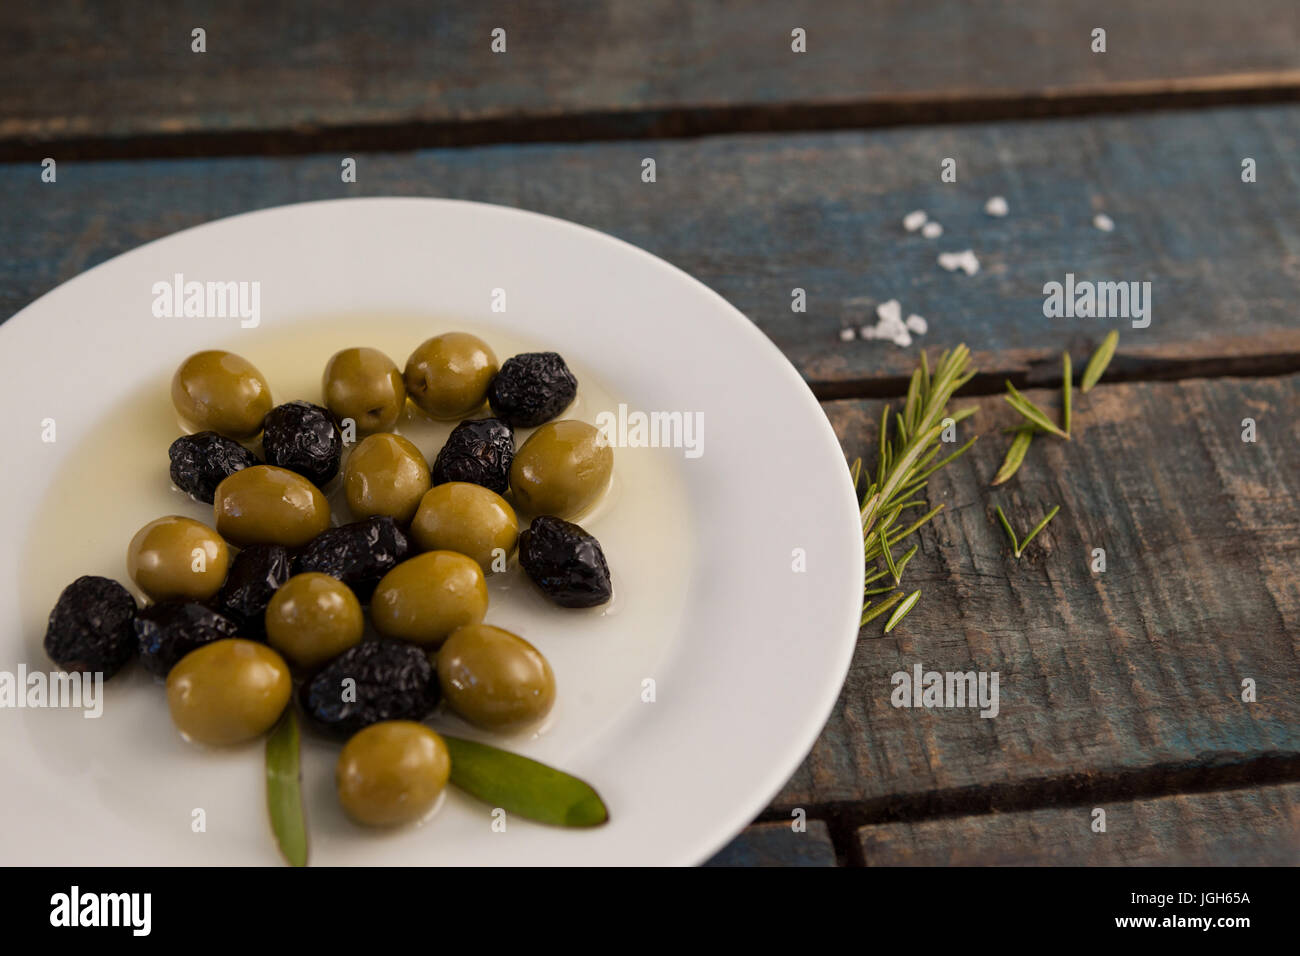 Elevato angolo di vista verde e secca di olive nere con olio nella piastra sulla tavola di legno Foto Stock